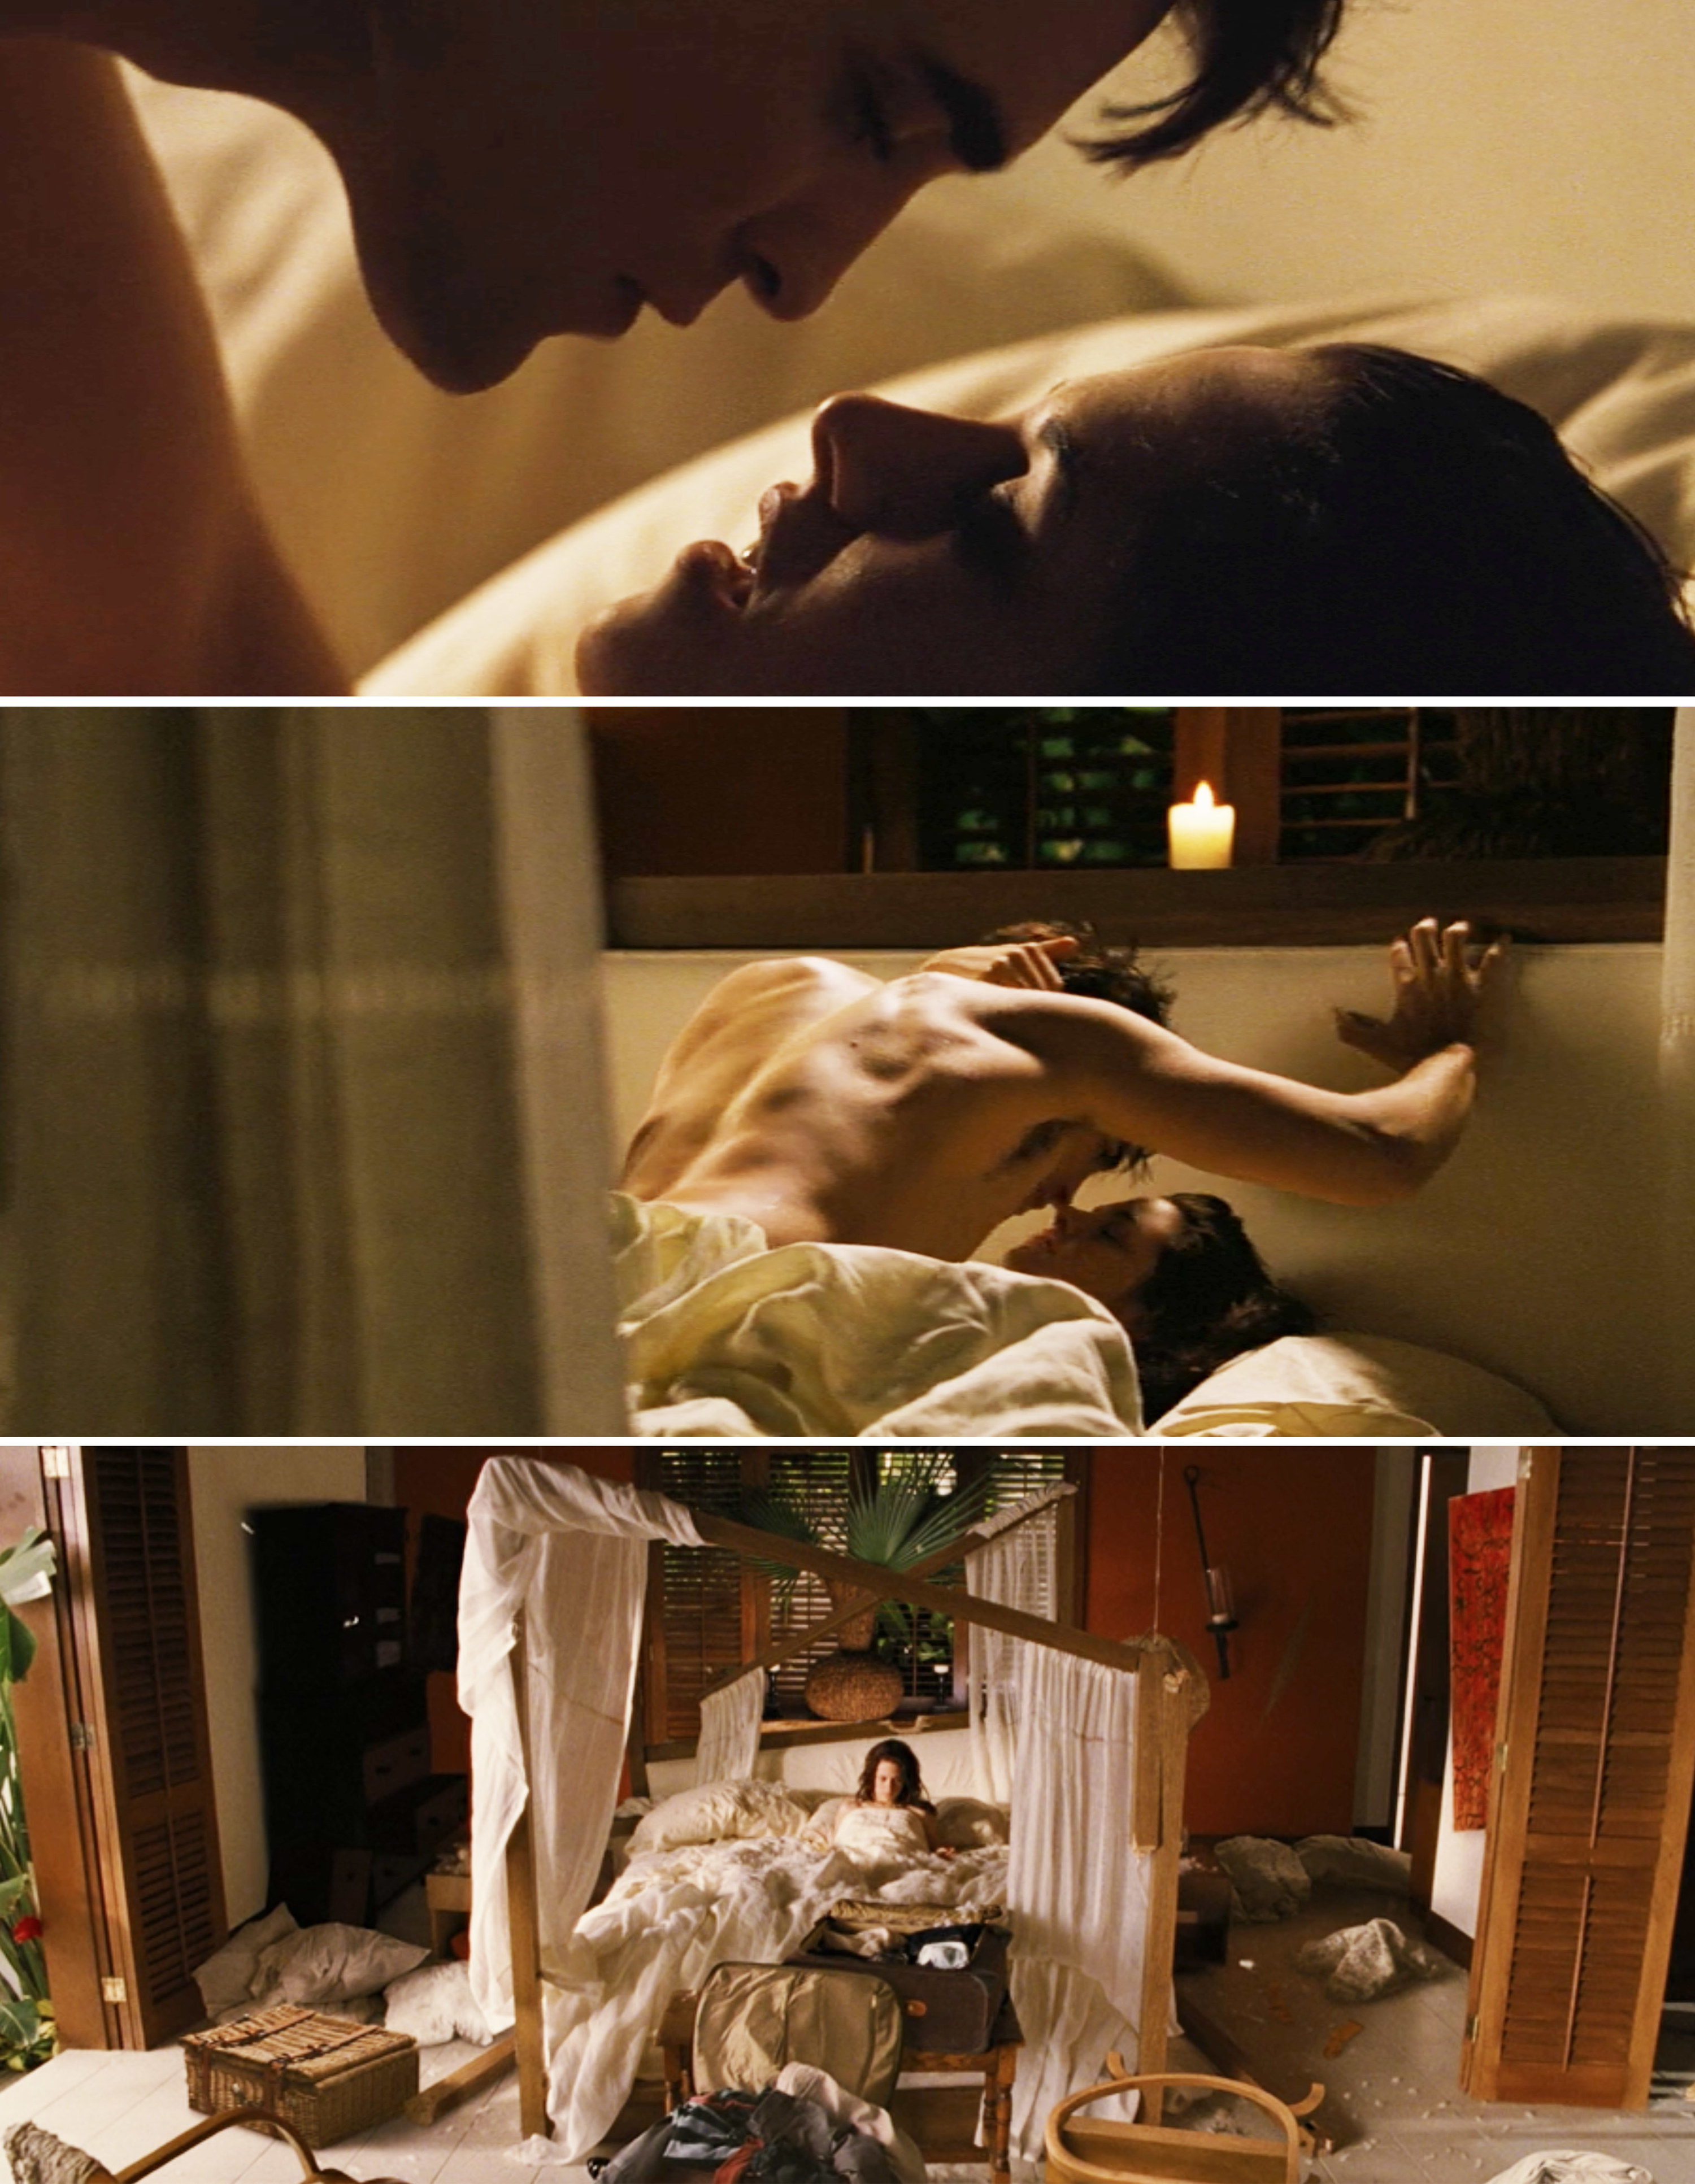 Kristen Stewart and Robert Pattinson in bed together